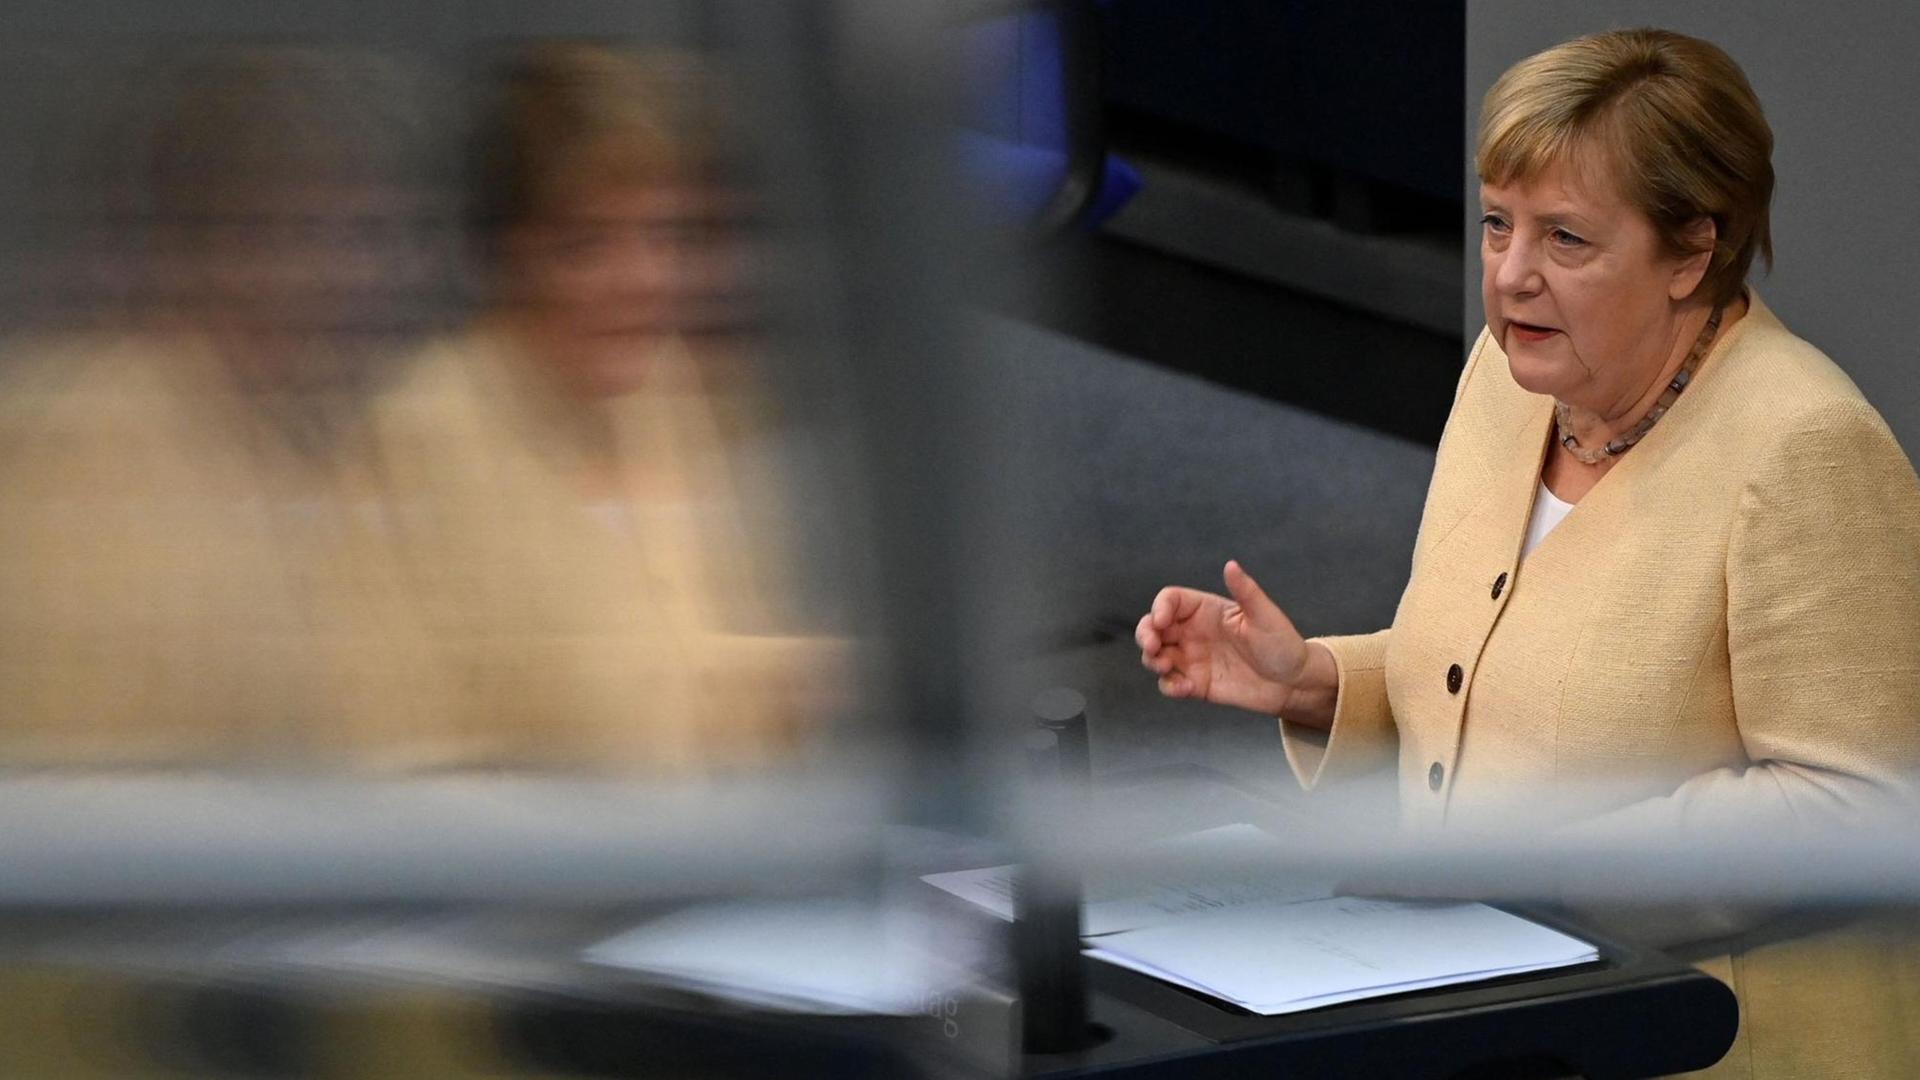 Bundeskanzlerin Angela Merkel spricht im Deutschen Bundestag.